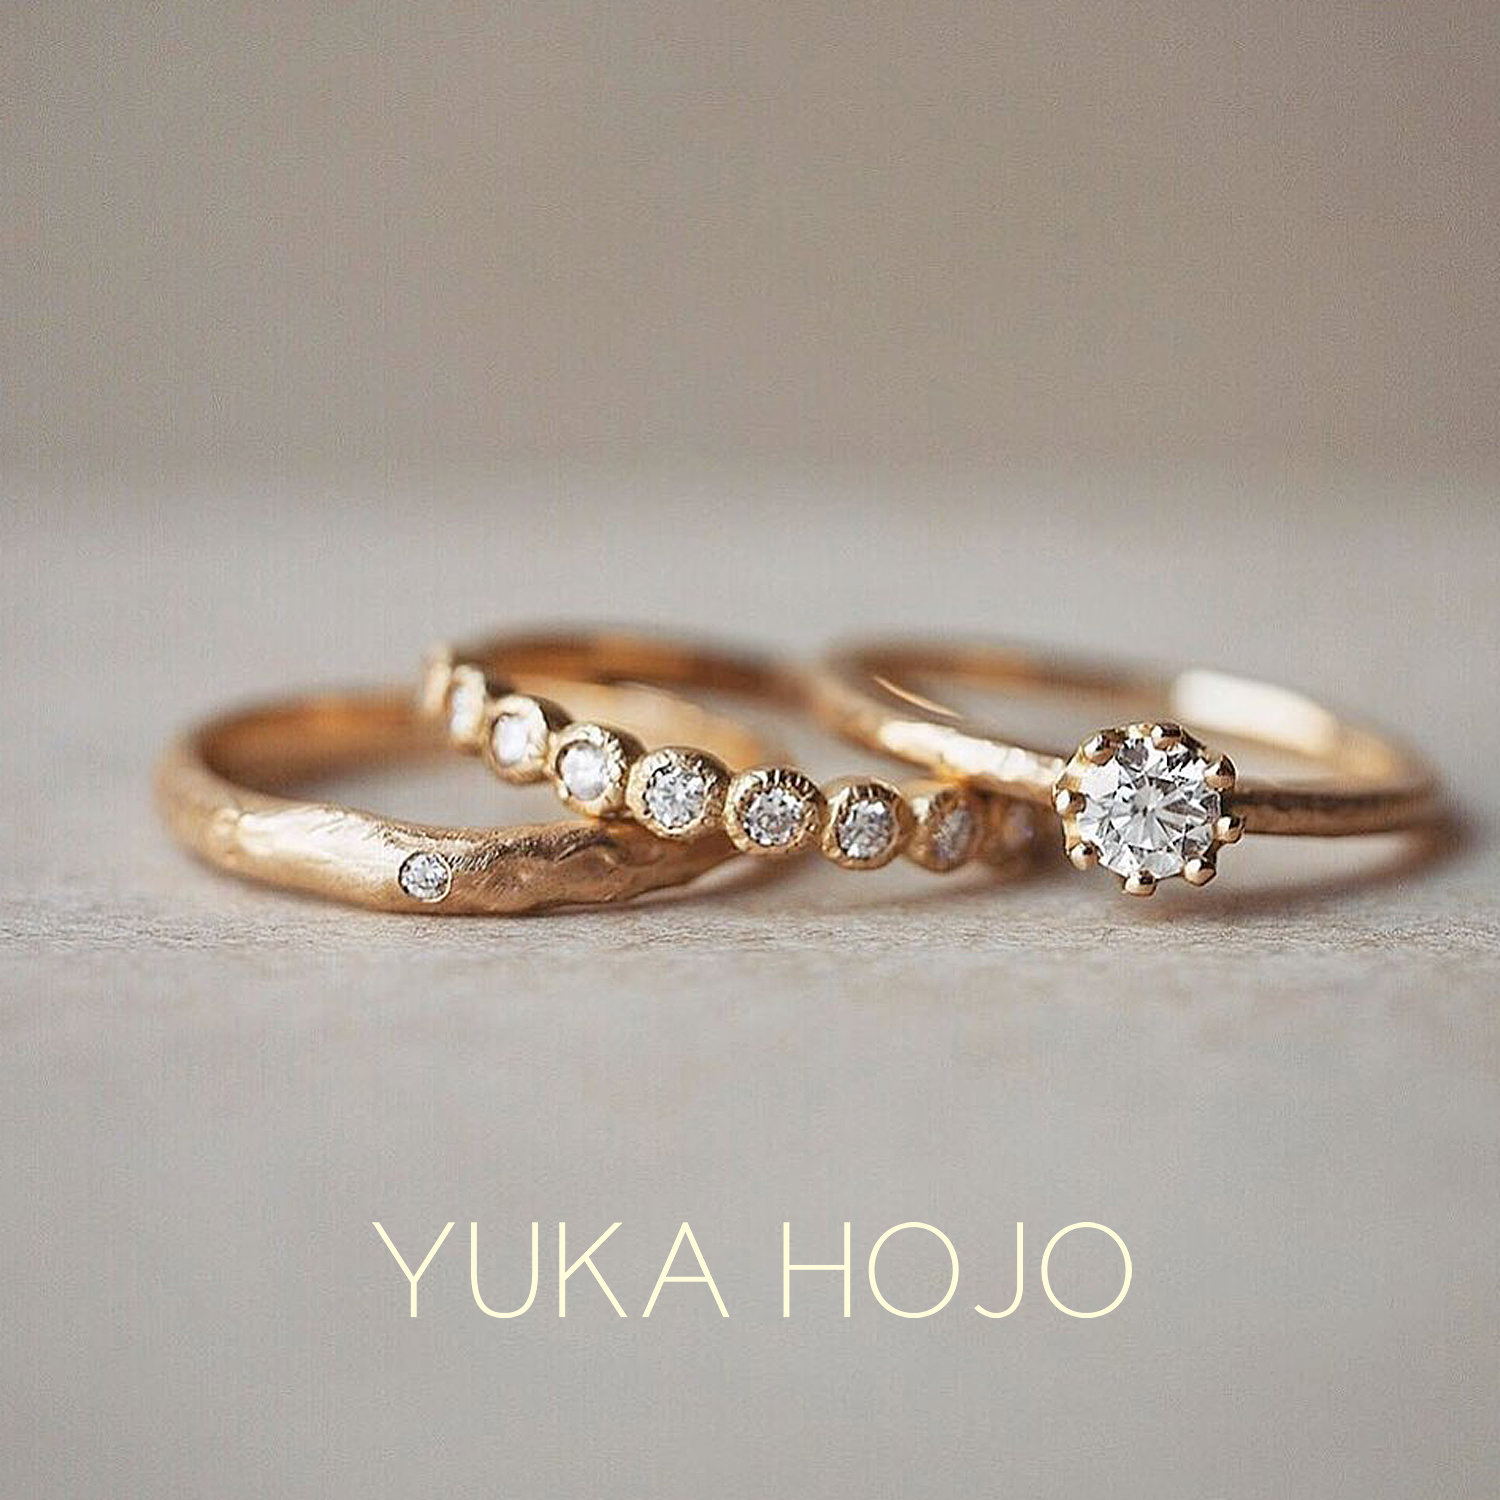 YUKA HOJOユカホウジョウの婚約指輪でエンゲージリングcapriカプリとエタニティリングのBloomブルームと結婚指輪でマリッジリングのMango treeマンゴツリー